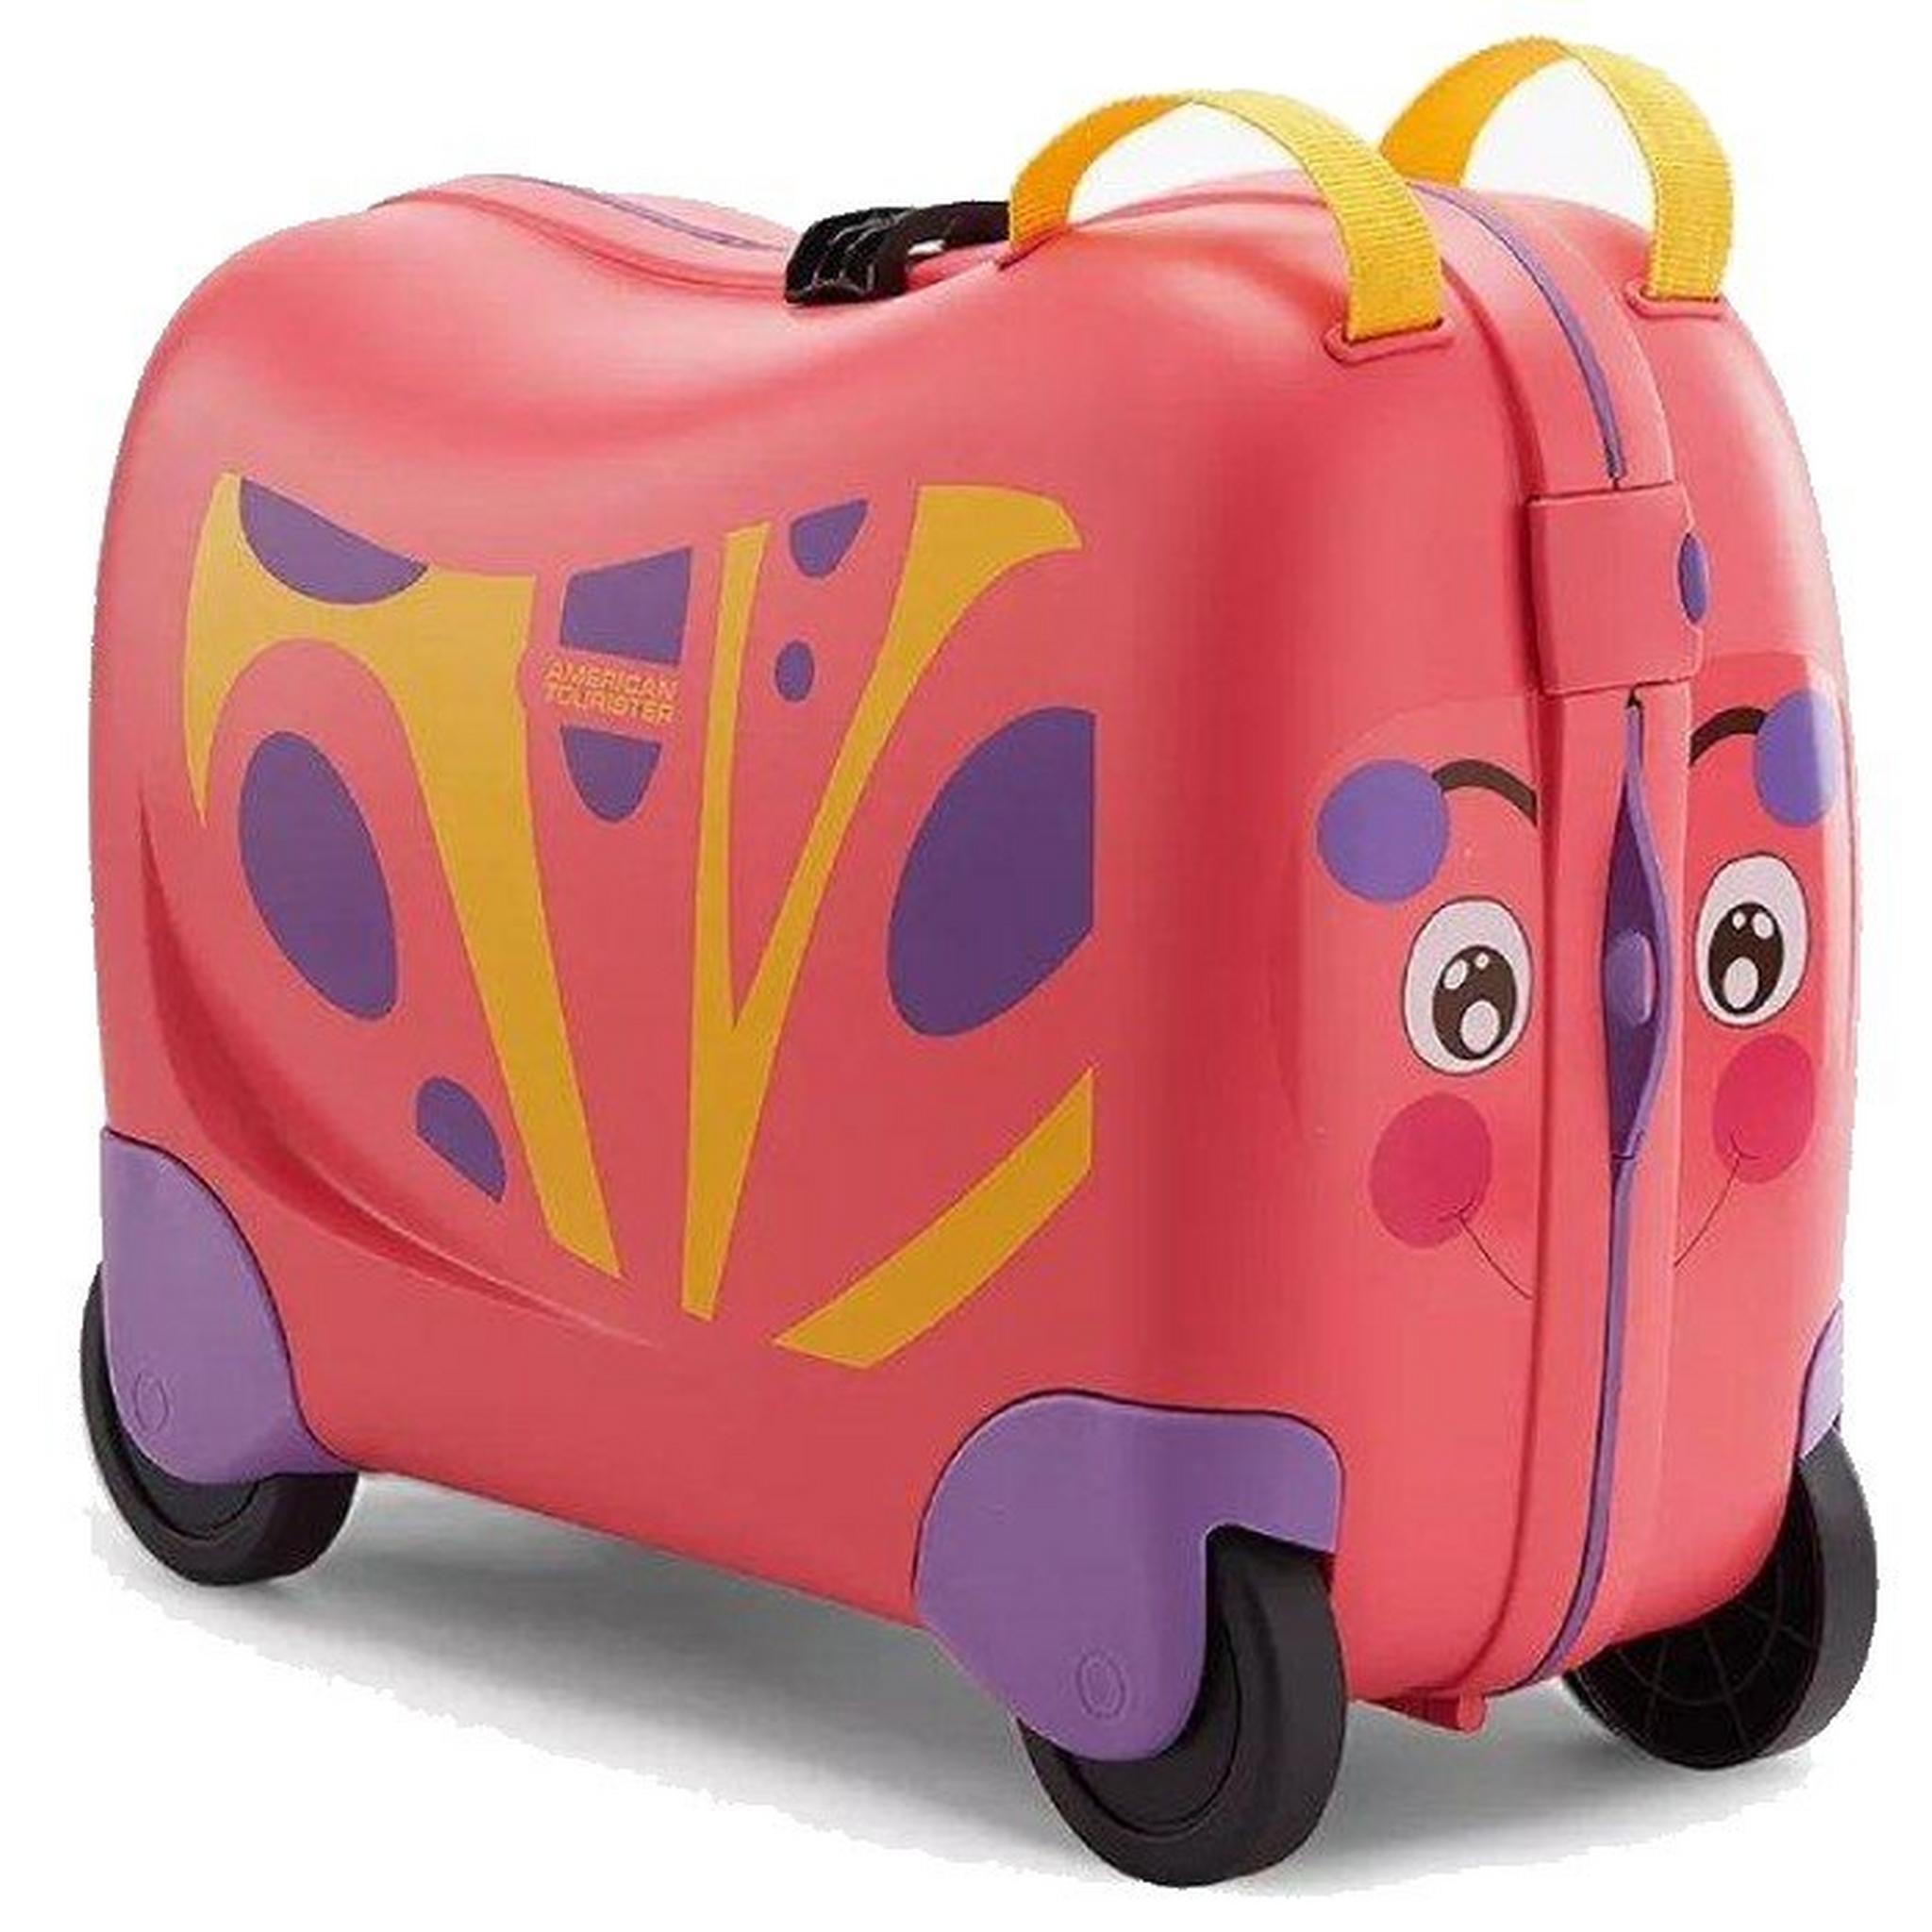 حقيبة سفر اطفال سكيتل من امريكان توريستر، سعة 25 لتر، FH0X90411 - فراشة وردية